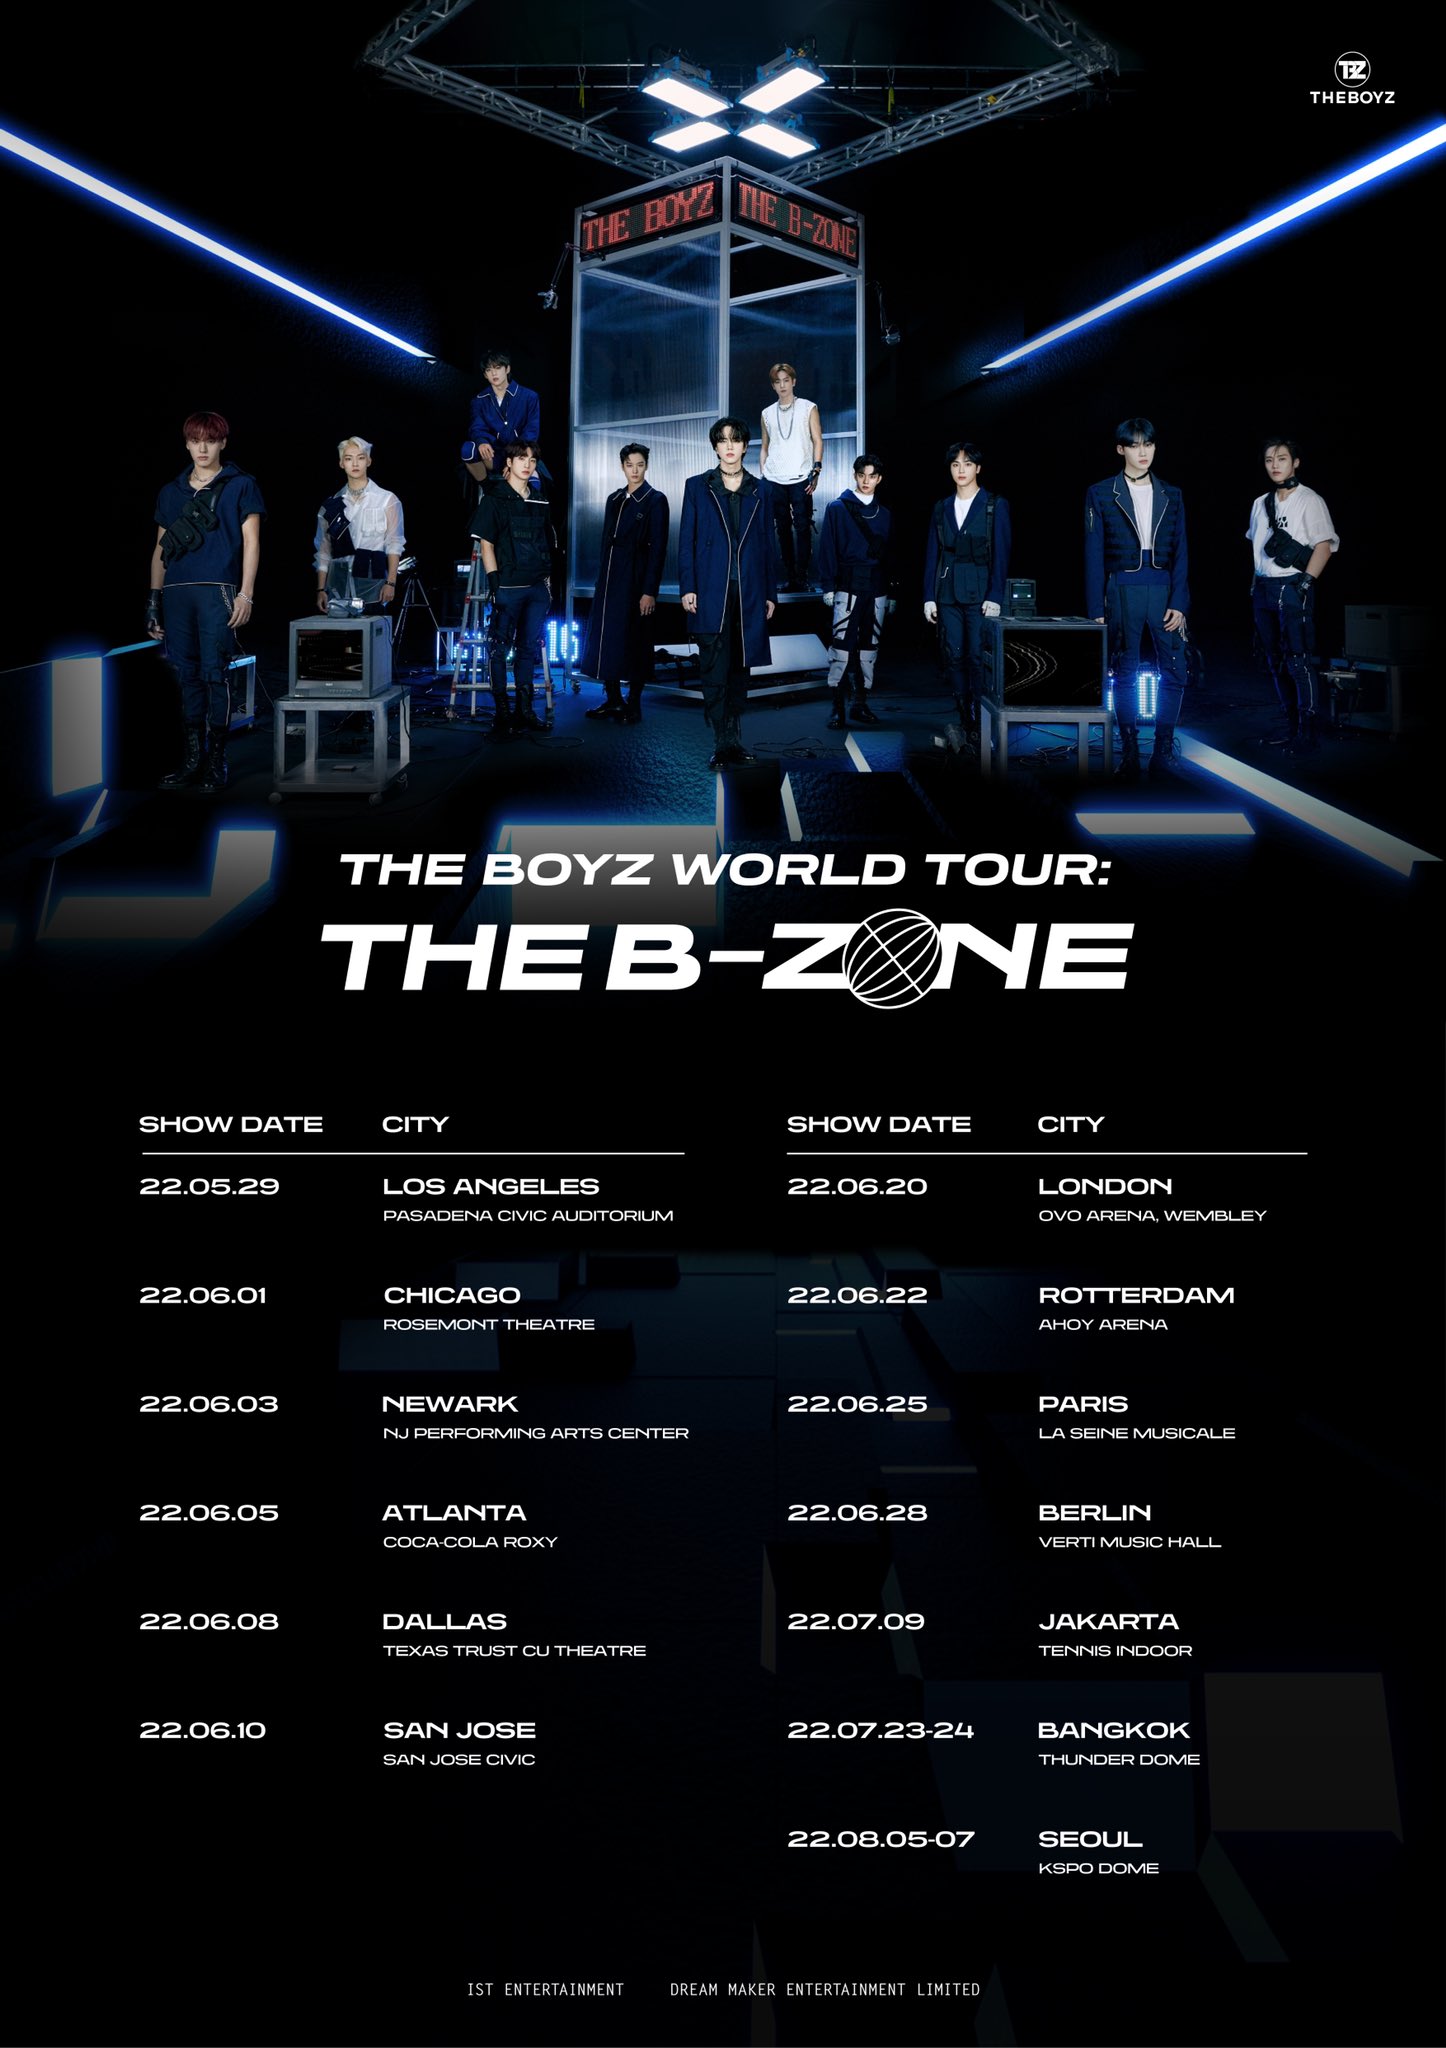 THE BOYZ WORLD TOUR